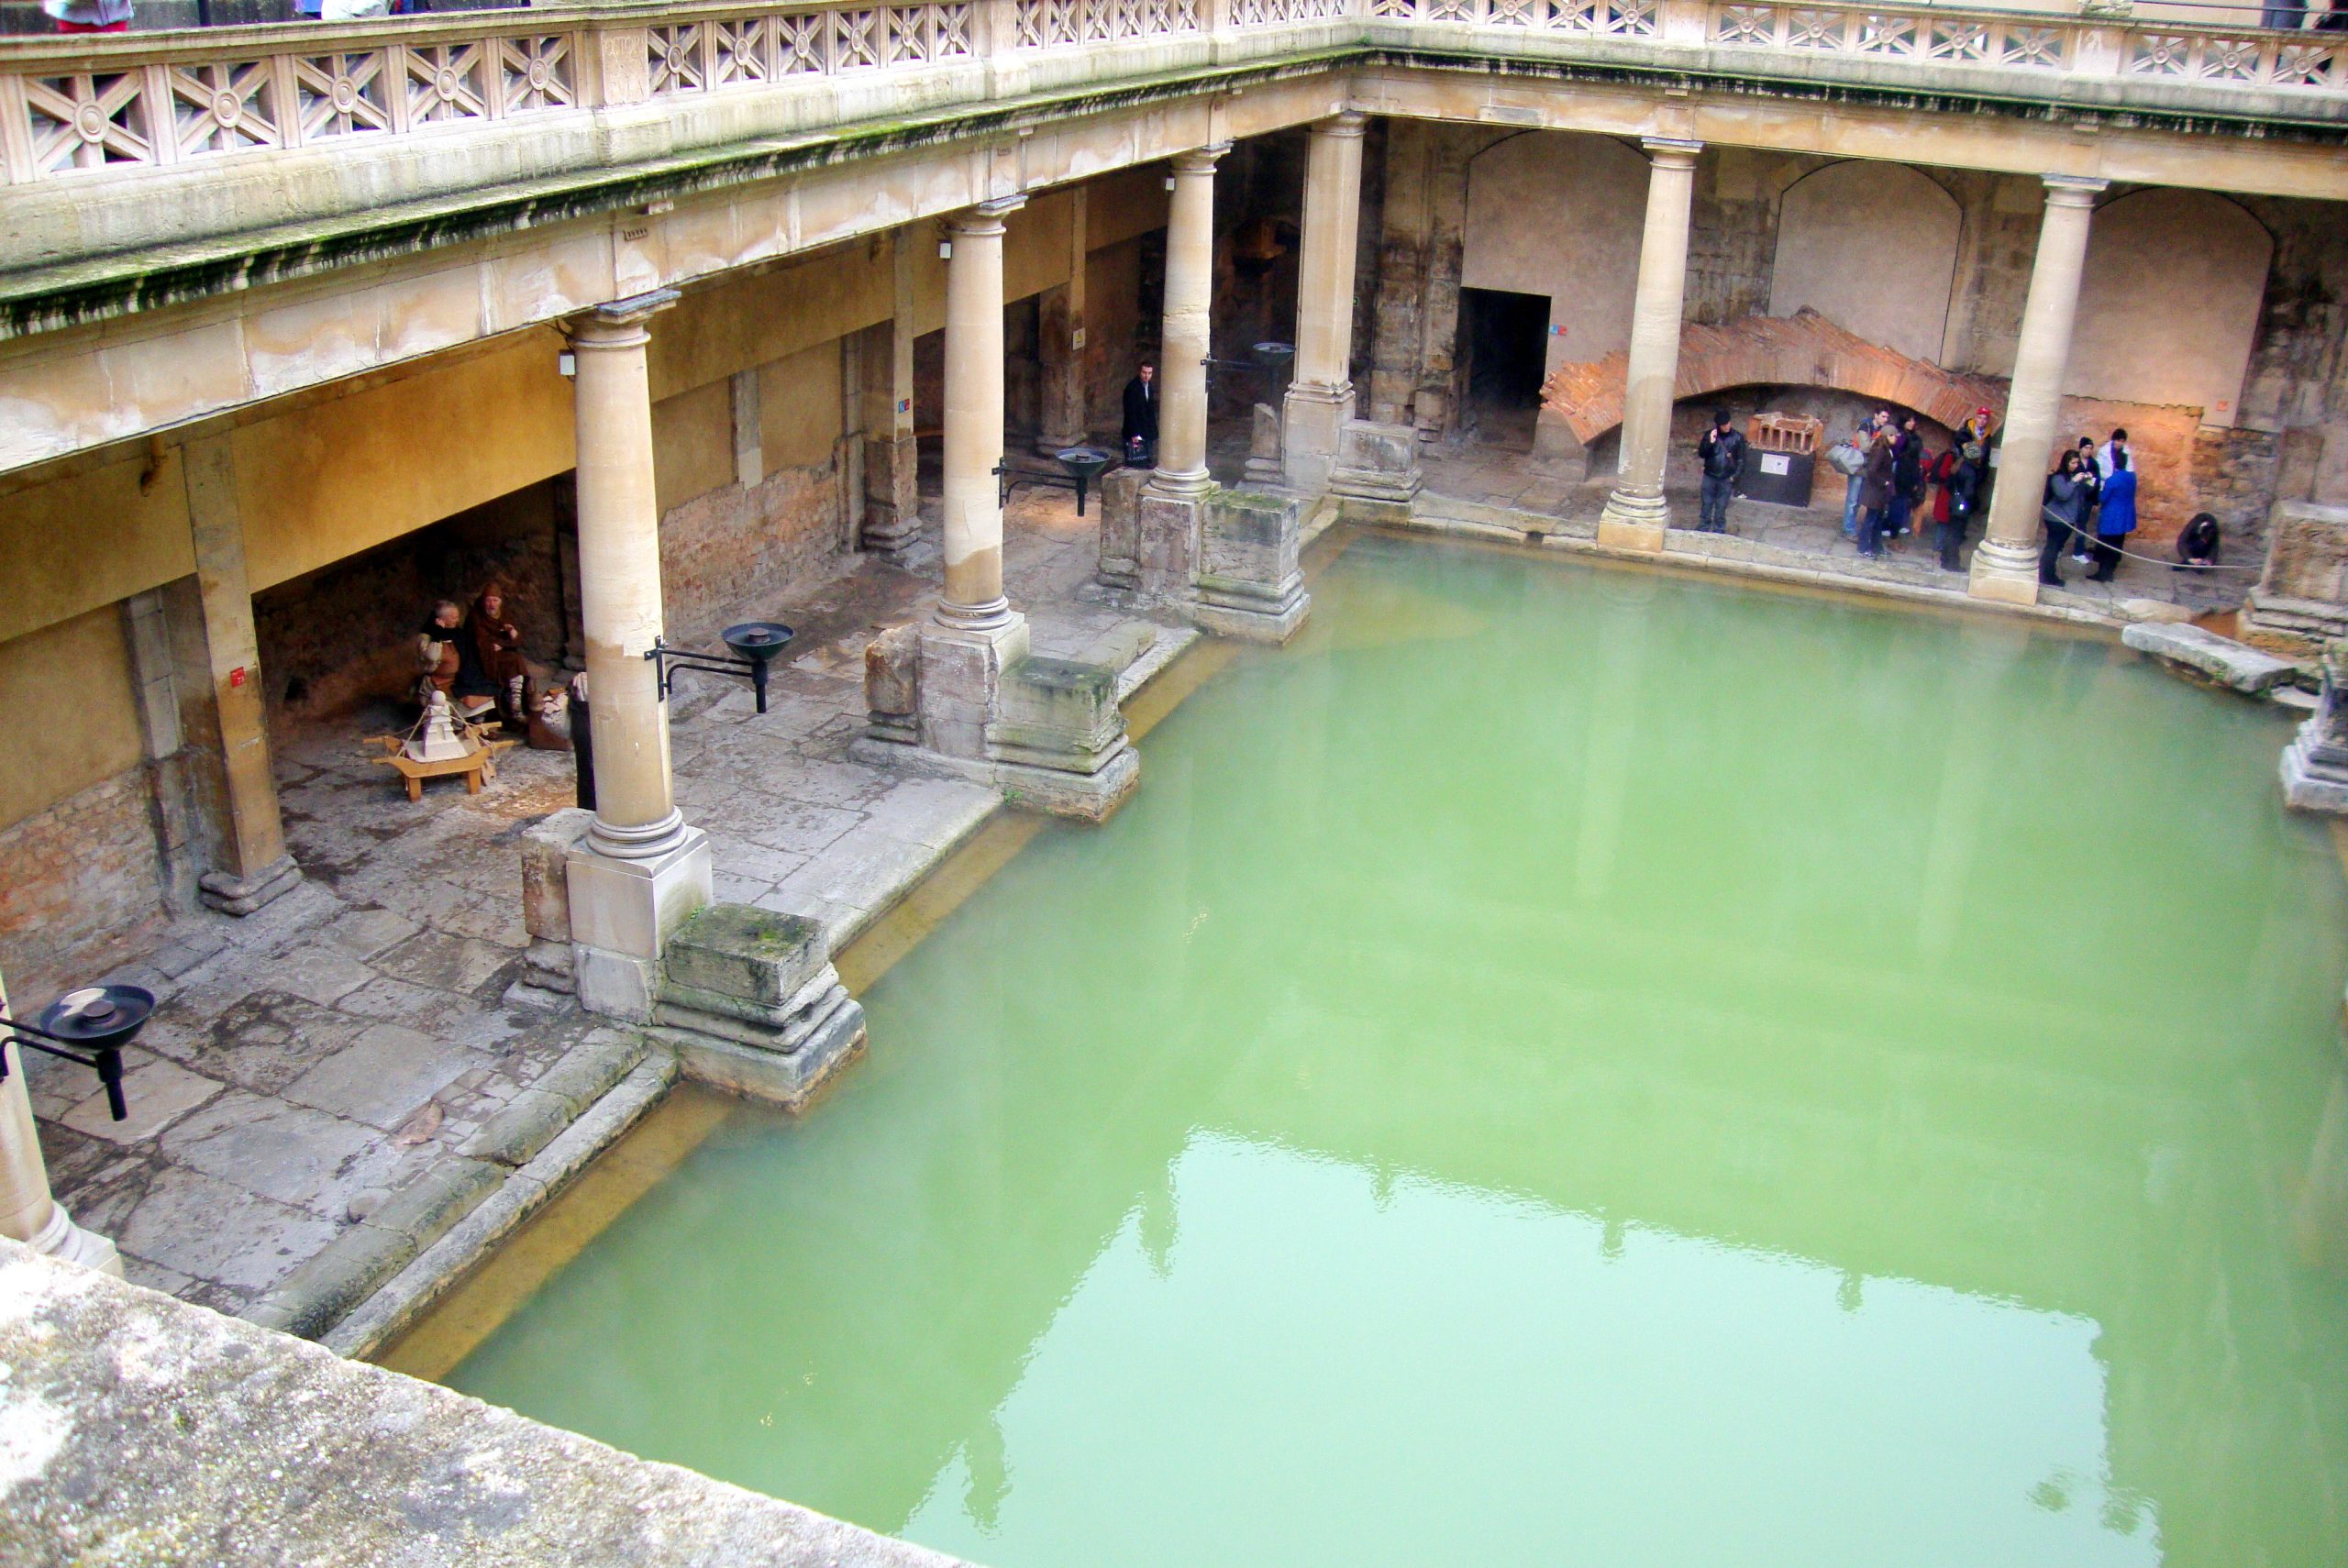 الحمامات الرومانية فى انجلترا، بريطانيا